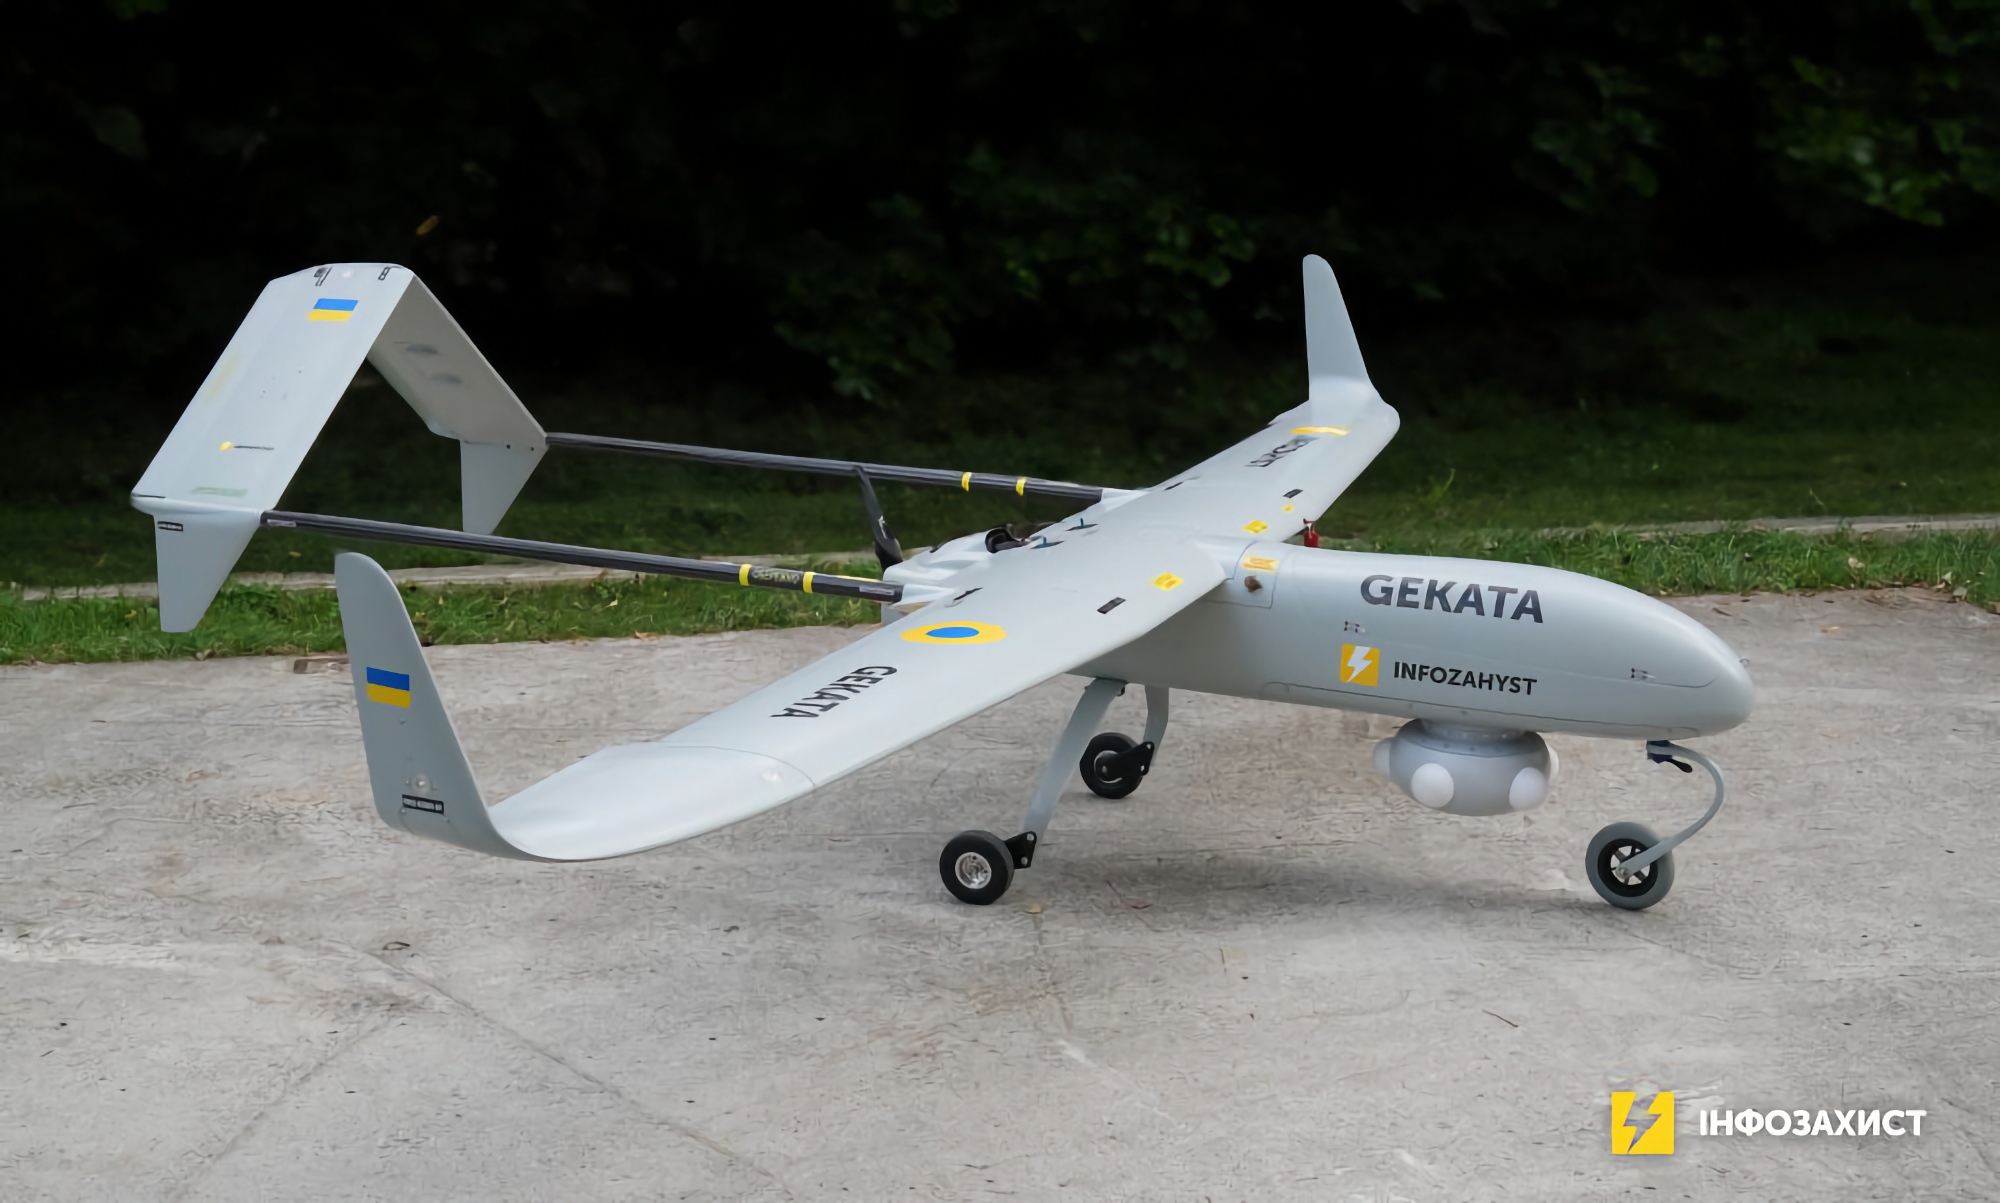 Ukraine begynder at teste en ny rekognoscerings-UAV Gekata, der kan blive i luften i op til 12 timer og opdage mål på en afstand af op til 450 km.